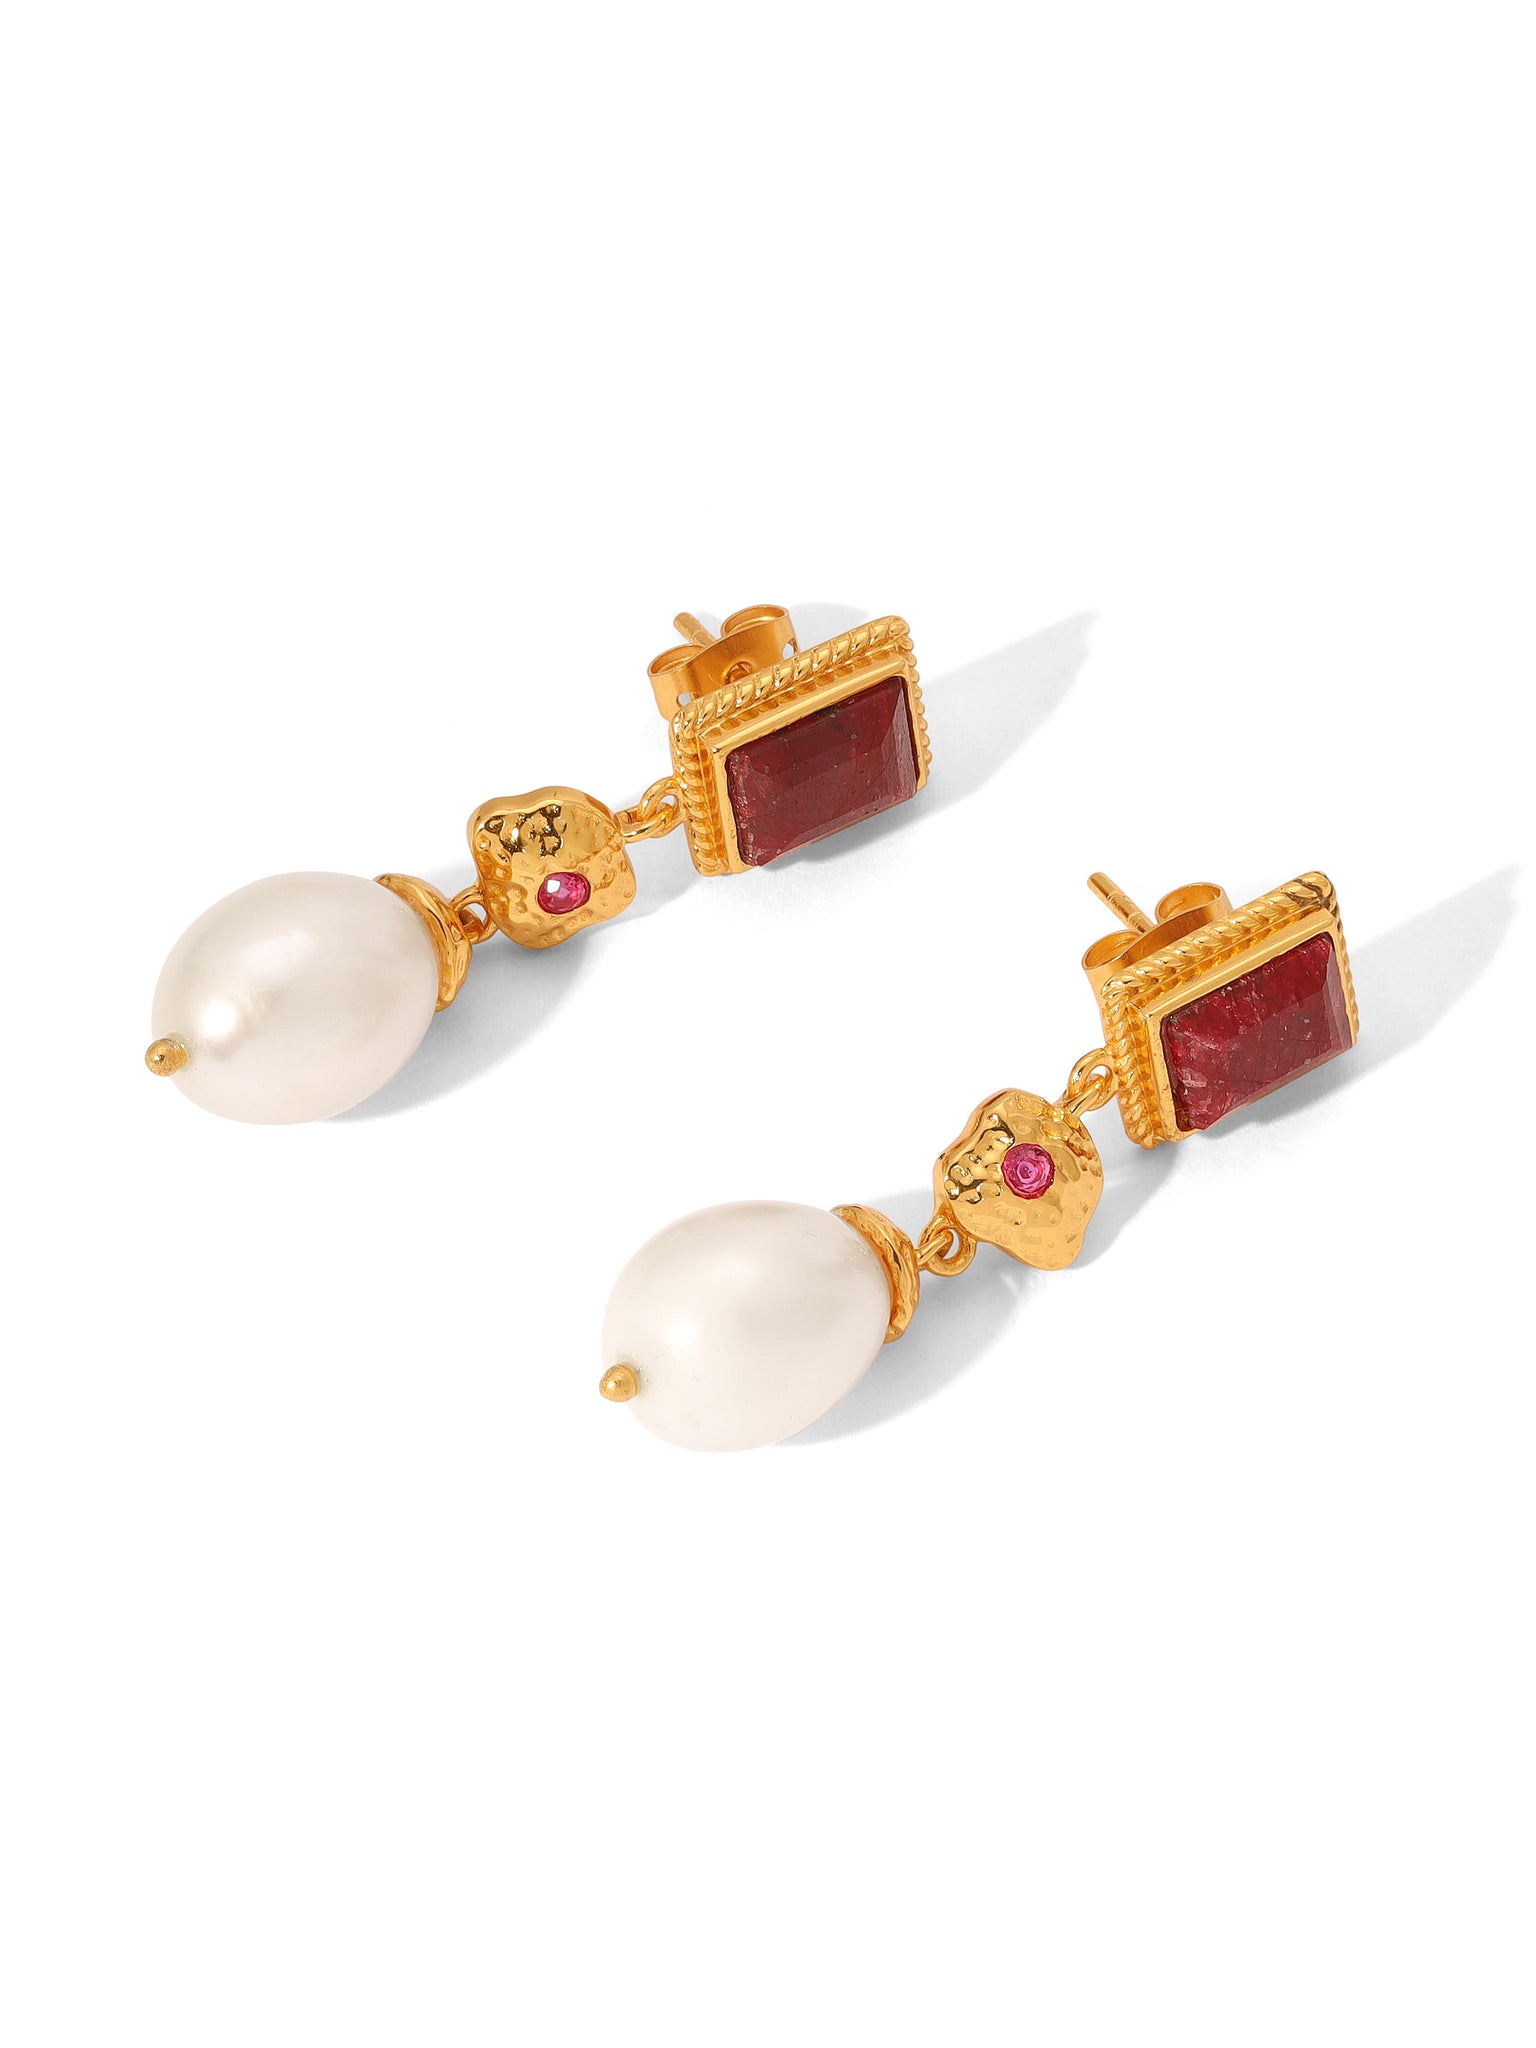 The Ensley Ruby Earrings